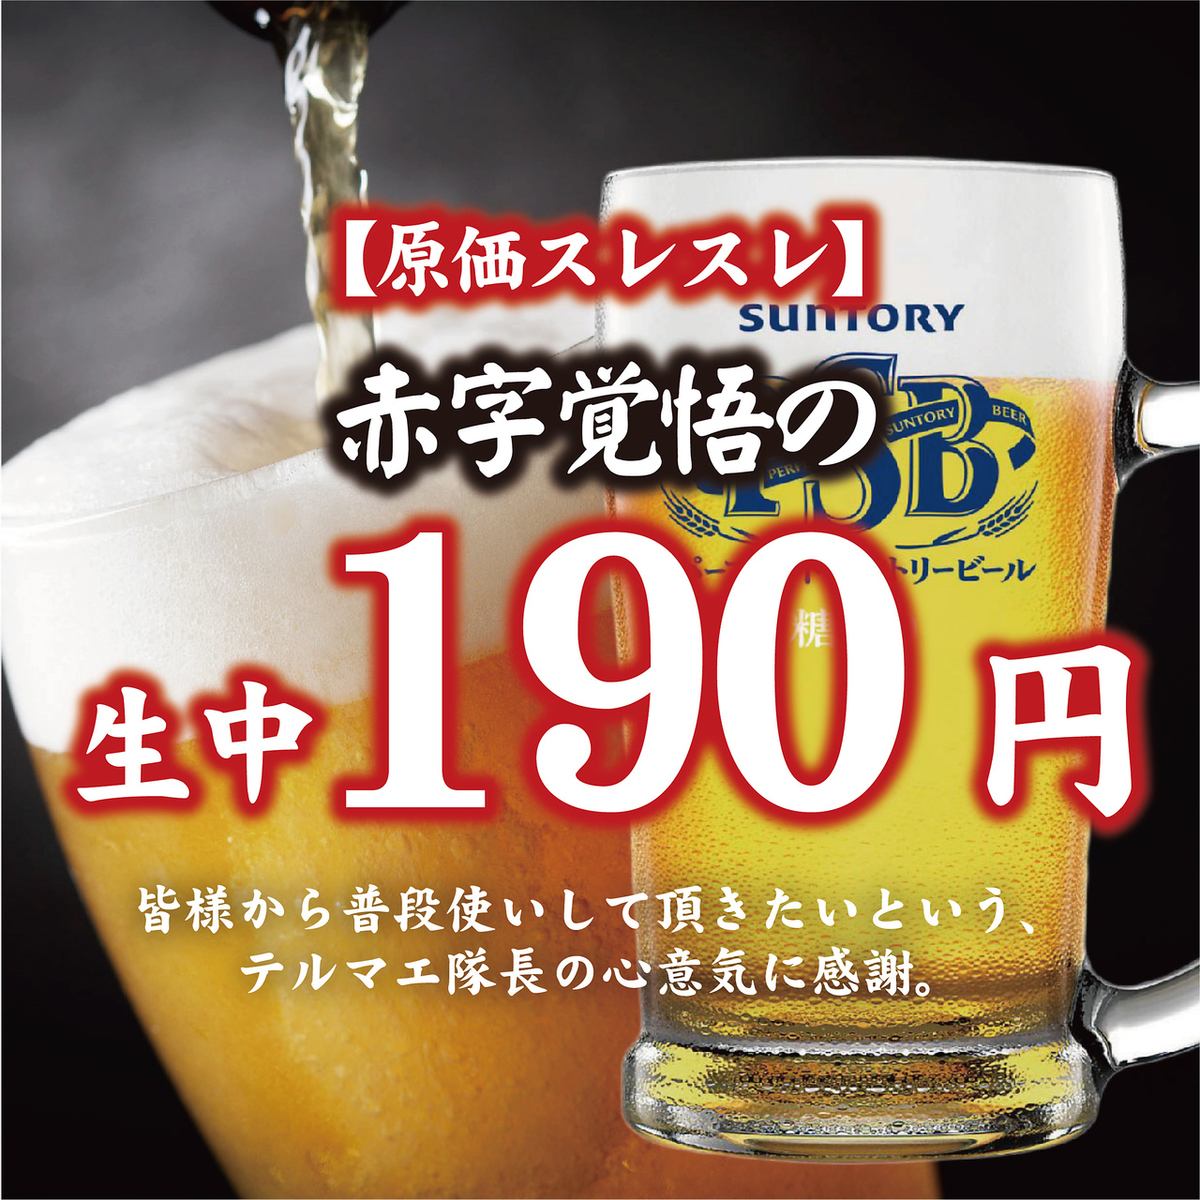 生啤酒190日元，做好亏本的心理准备吧！便宜又有趣的超值回报♪